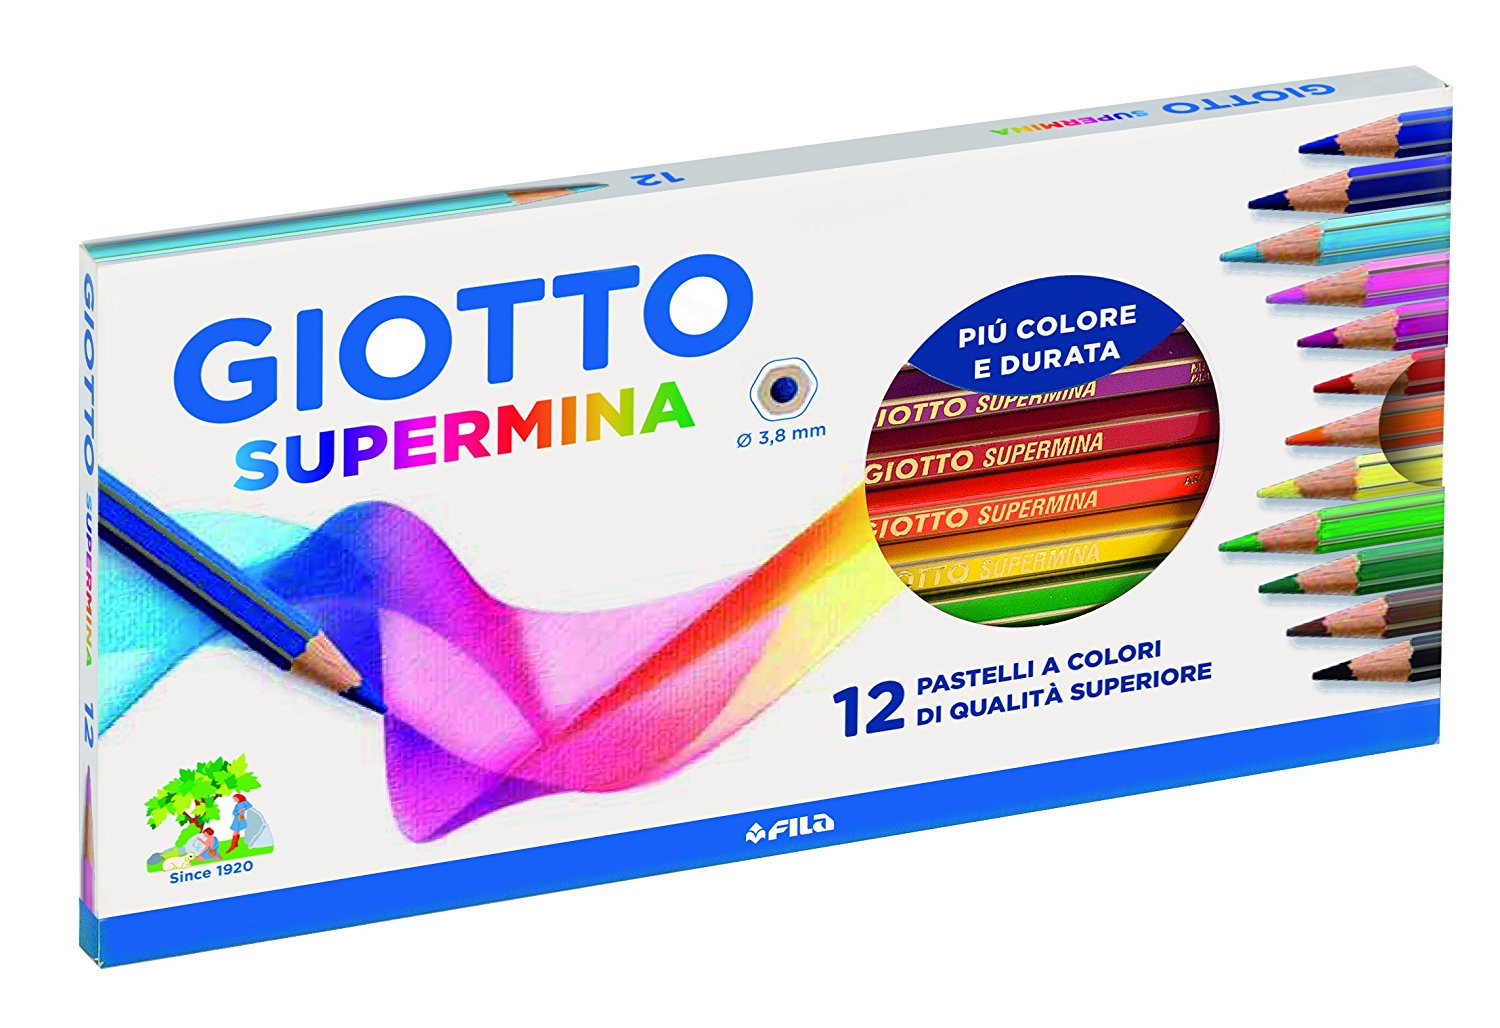 Astuccio 12 Pastelli Colorati Giotto Supermina.